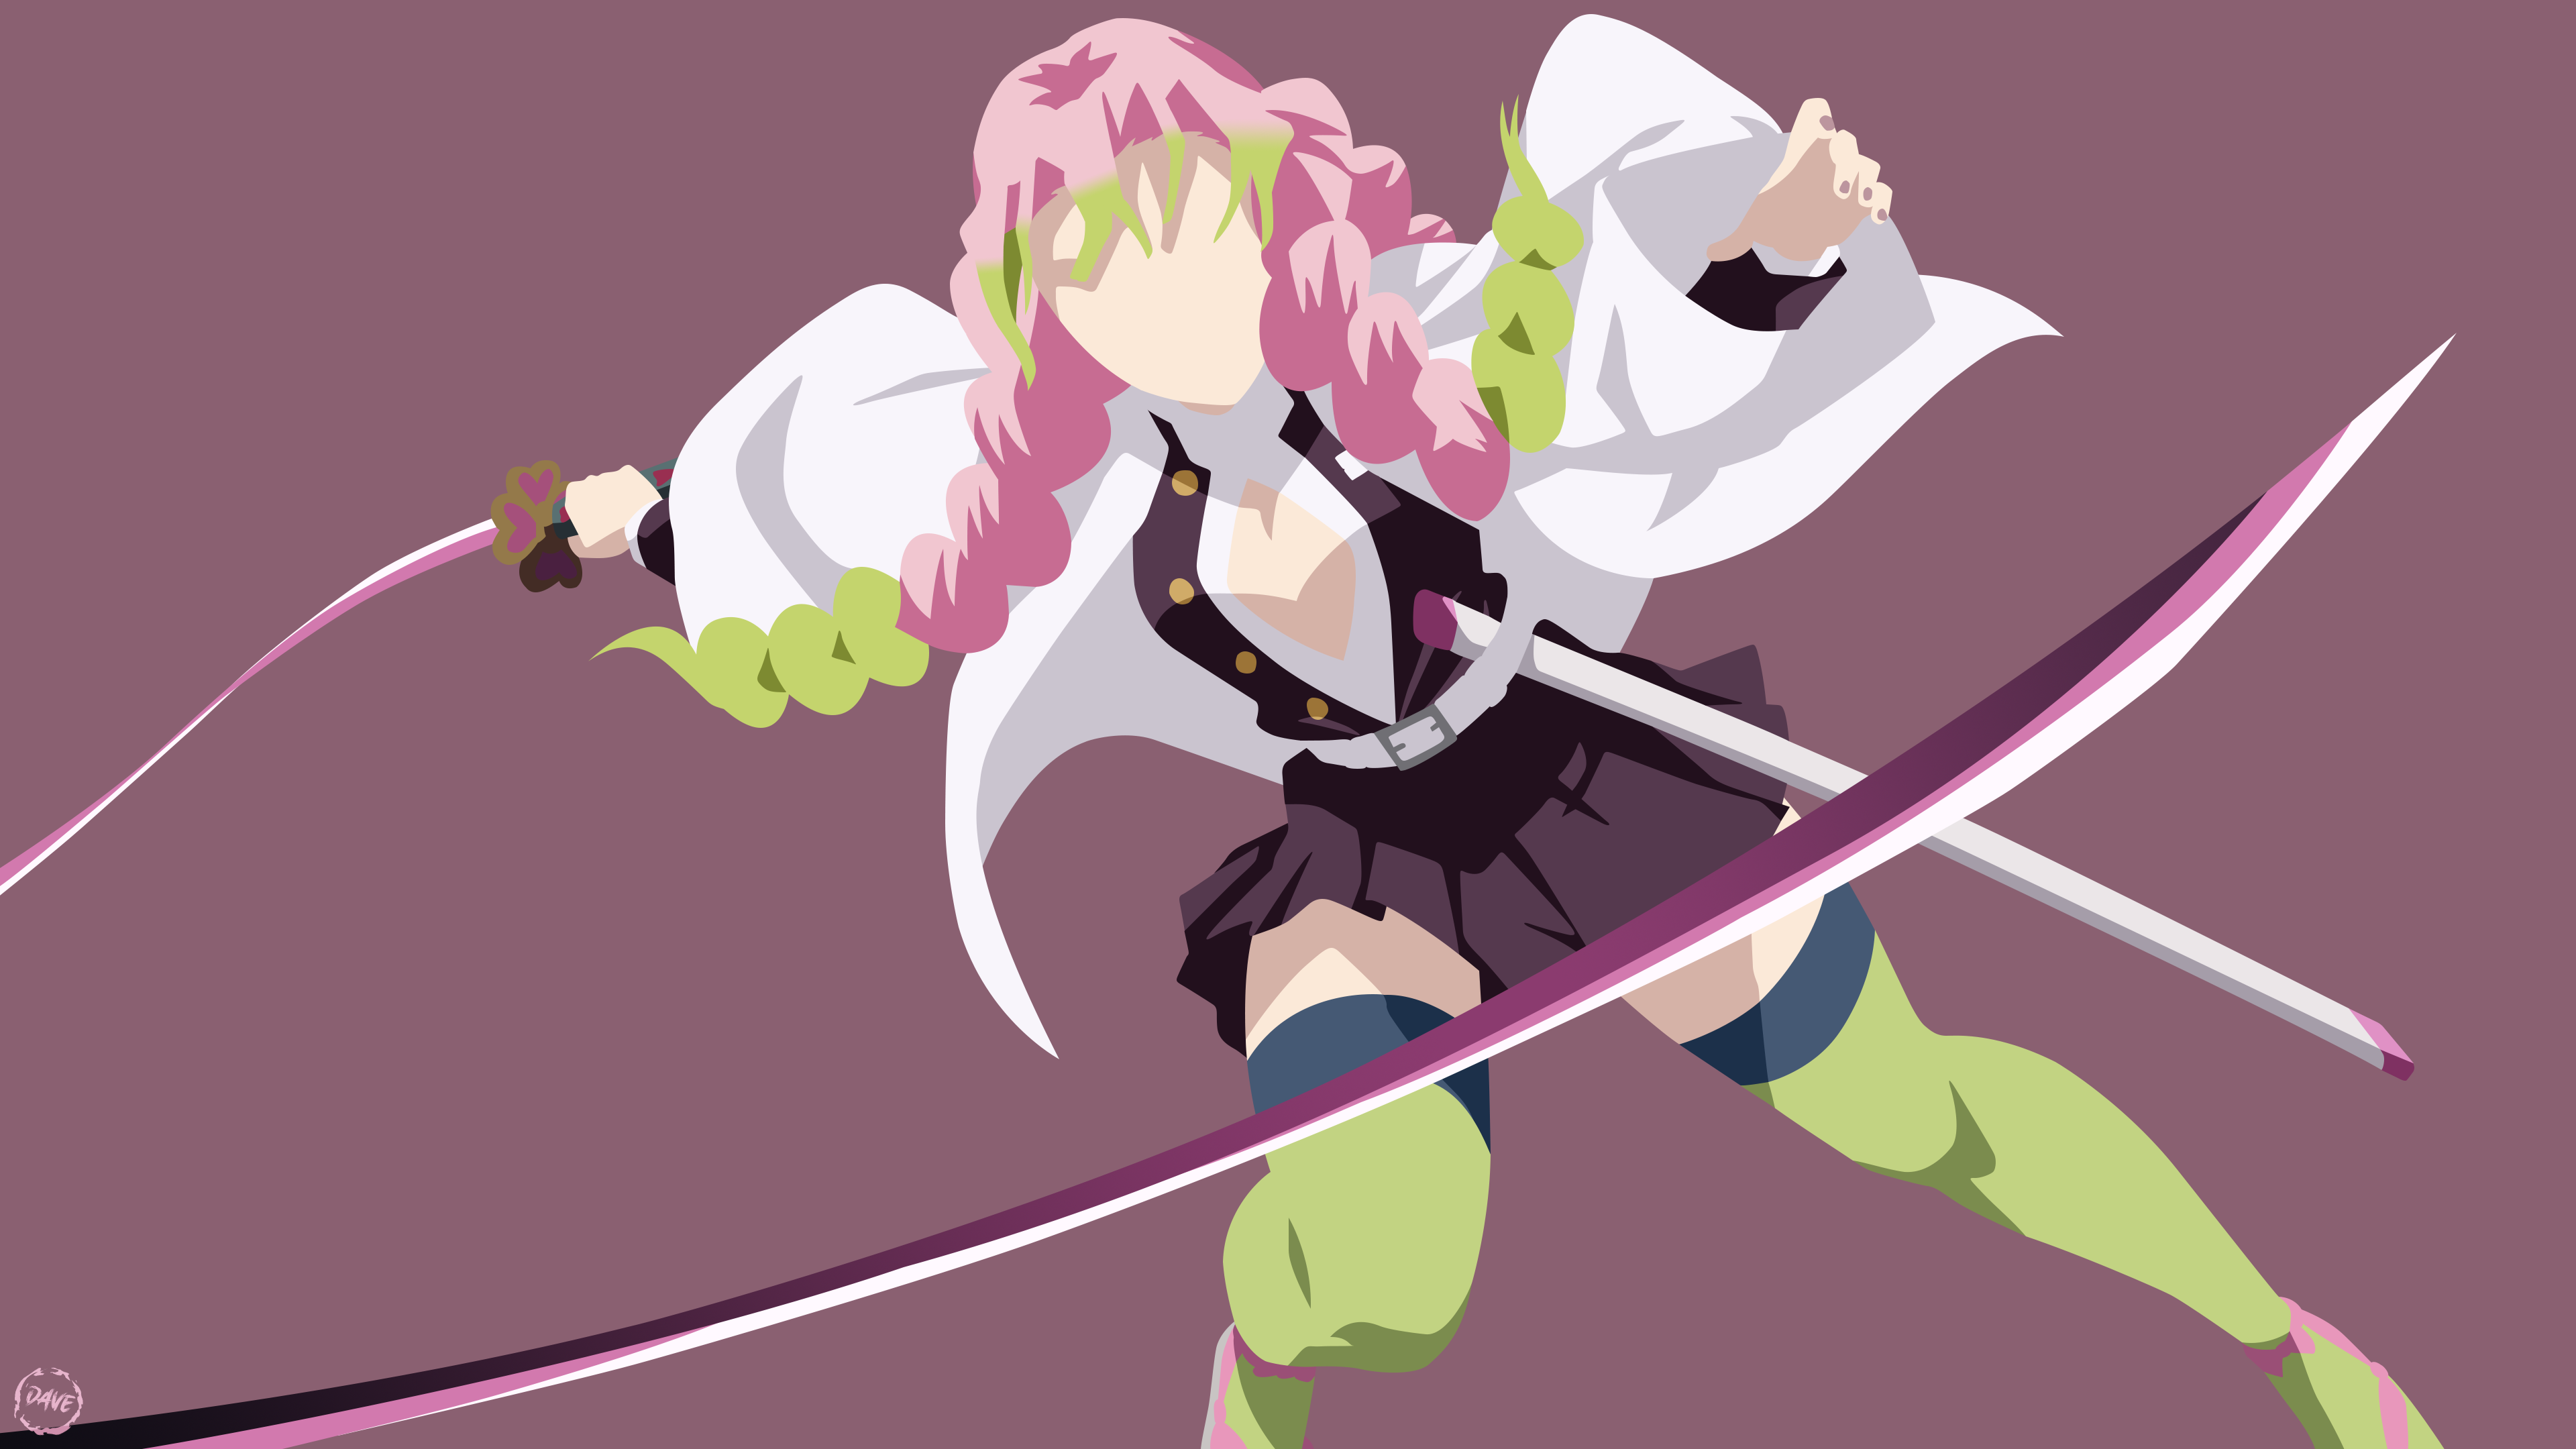 Anime Demon Slayer: Kimetsu no Yaiba HD Wallpaper by LittleC CC